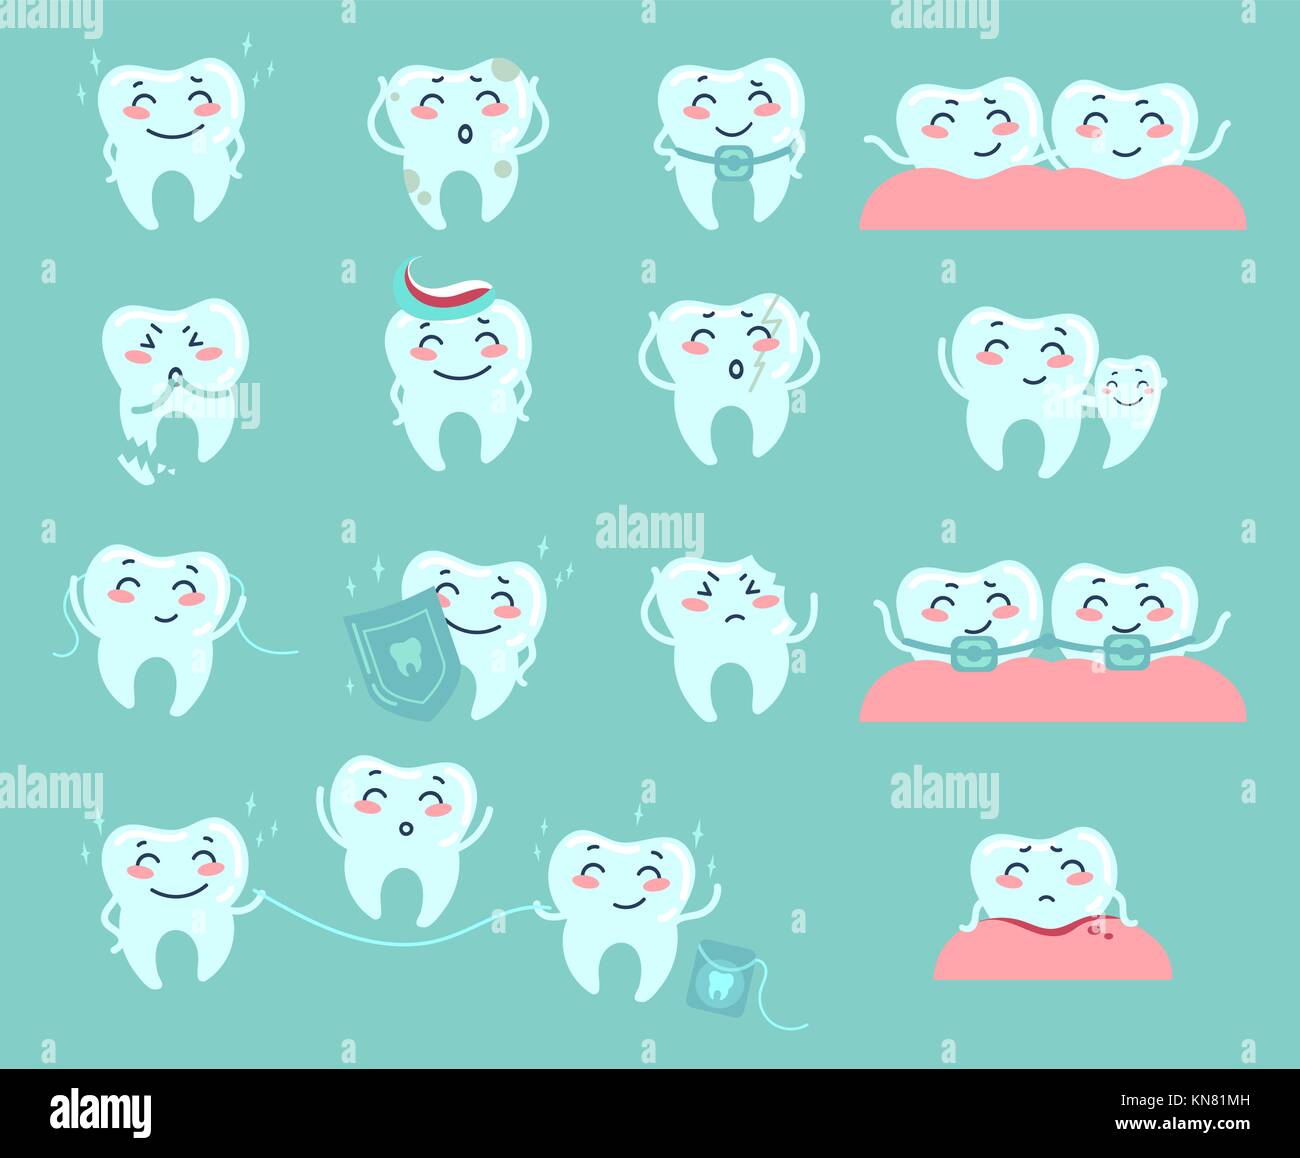 Cute cartoon des dents. Problèmes dentaires et traiter Illustration de Vecteur